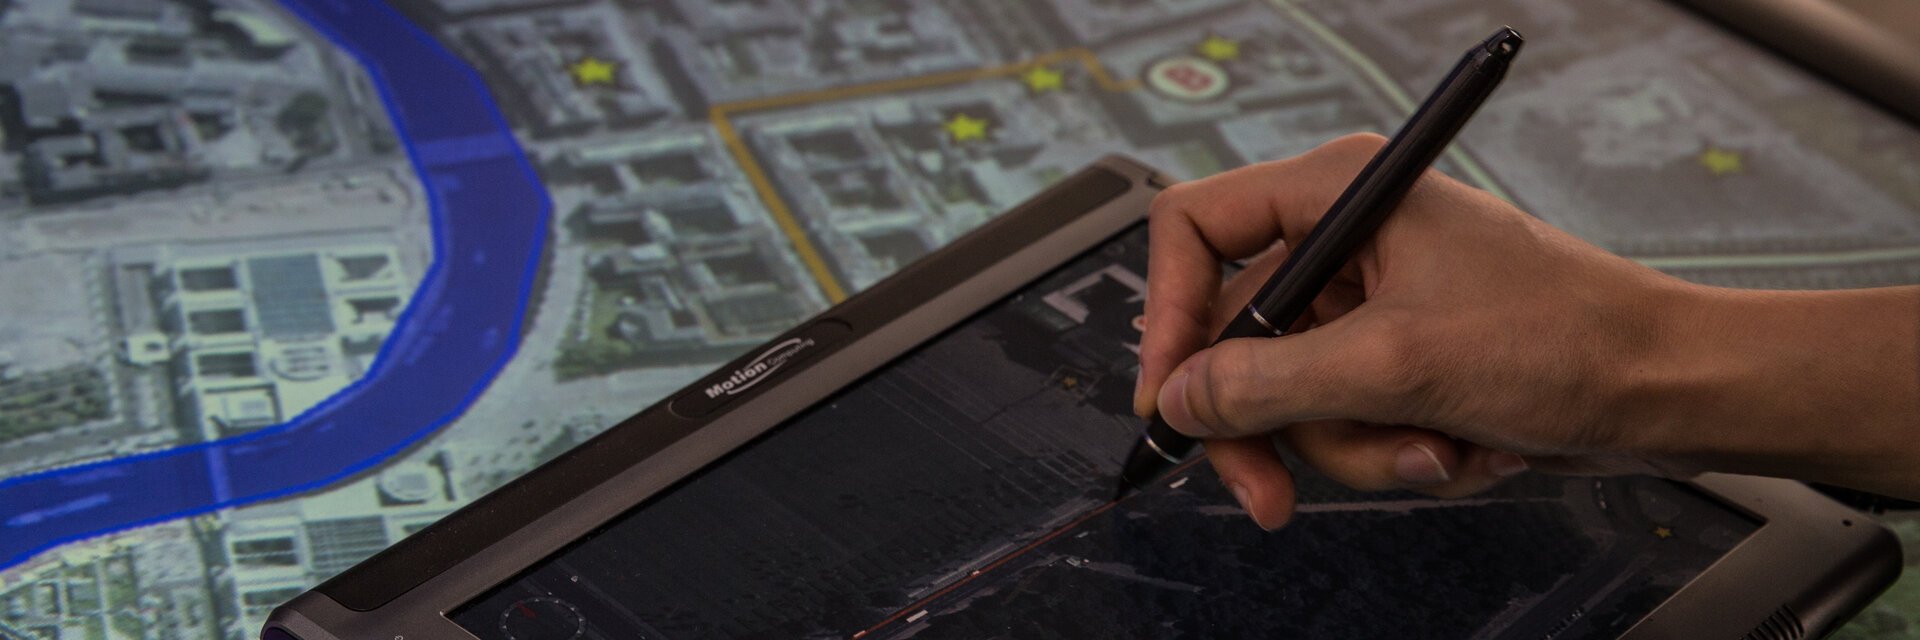 Hand mit elektronischem Pen, die ein Tablet bedient und etwas zeichnet